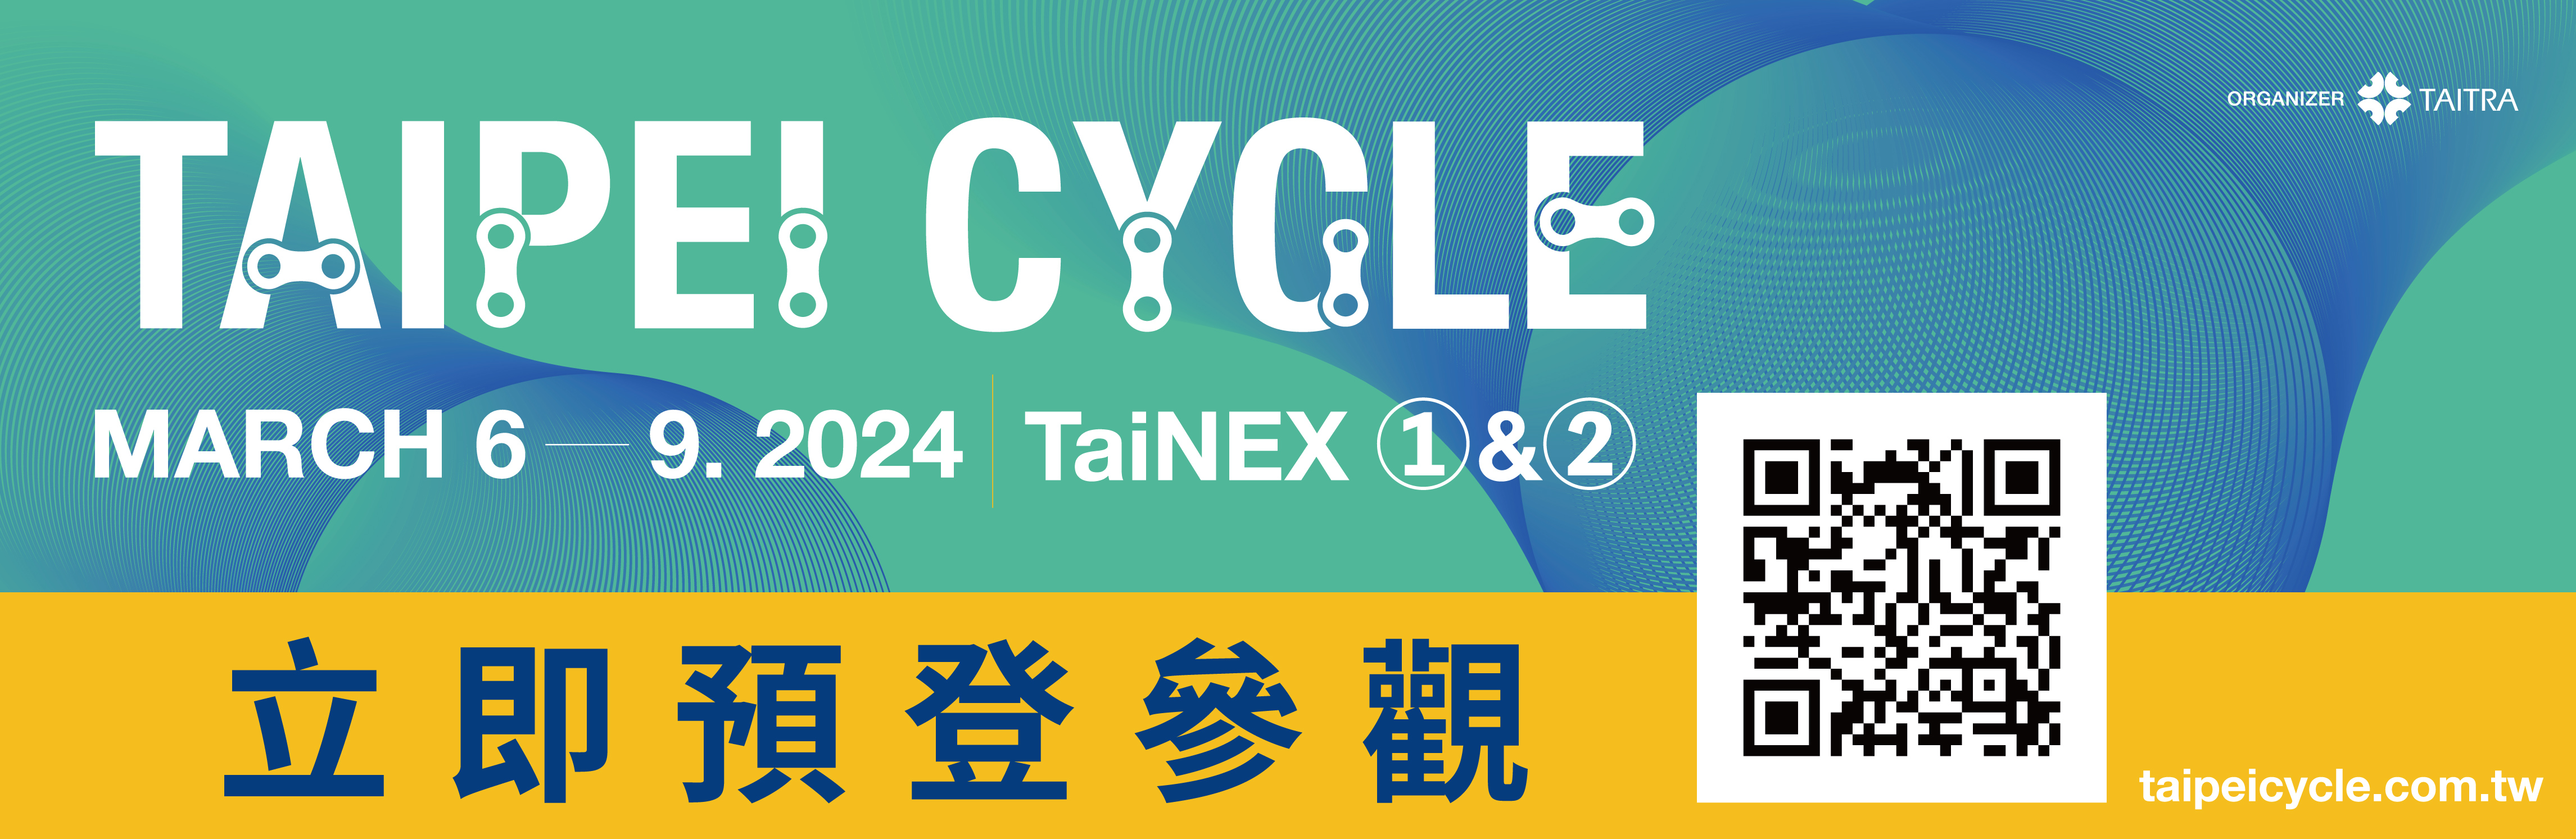 TAIPEI CYCLE 2024 台北國際自行車展 將於2024/3/6開展!